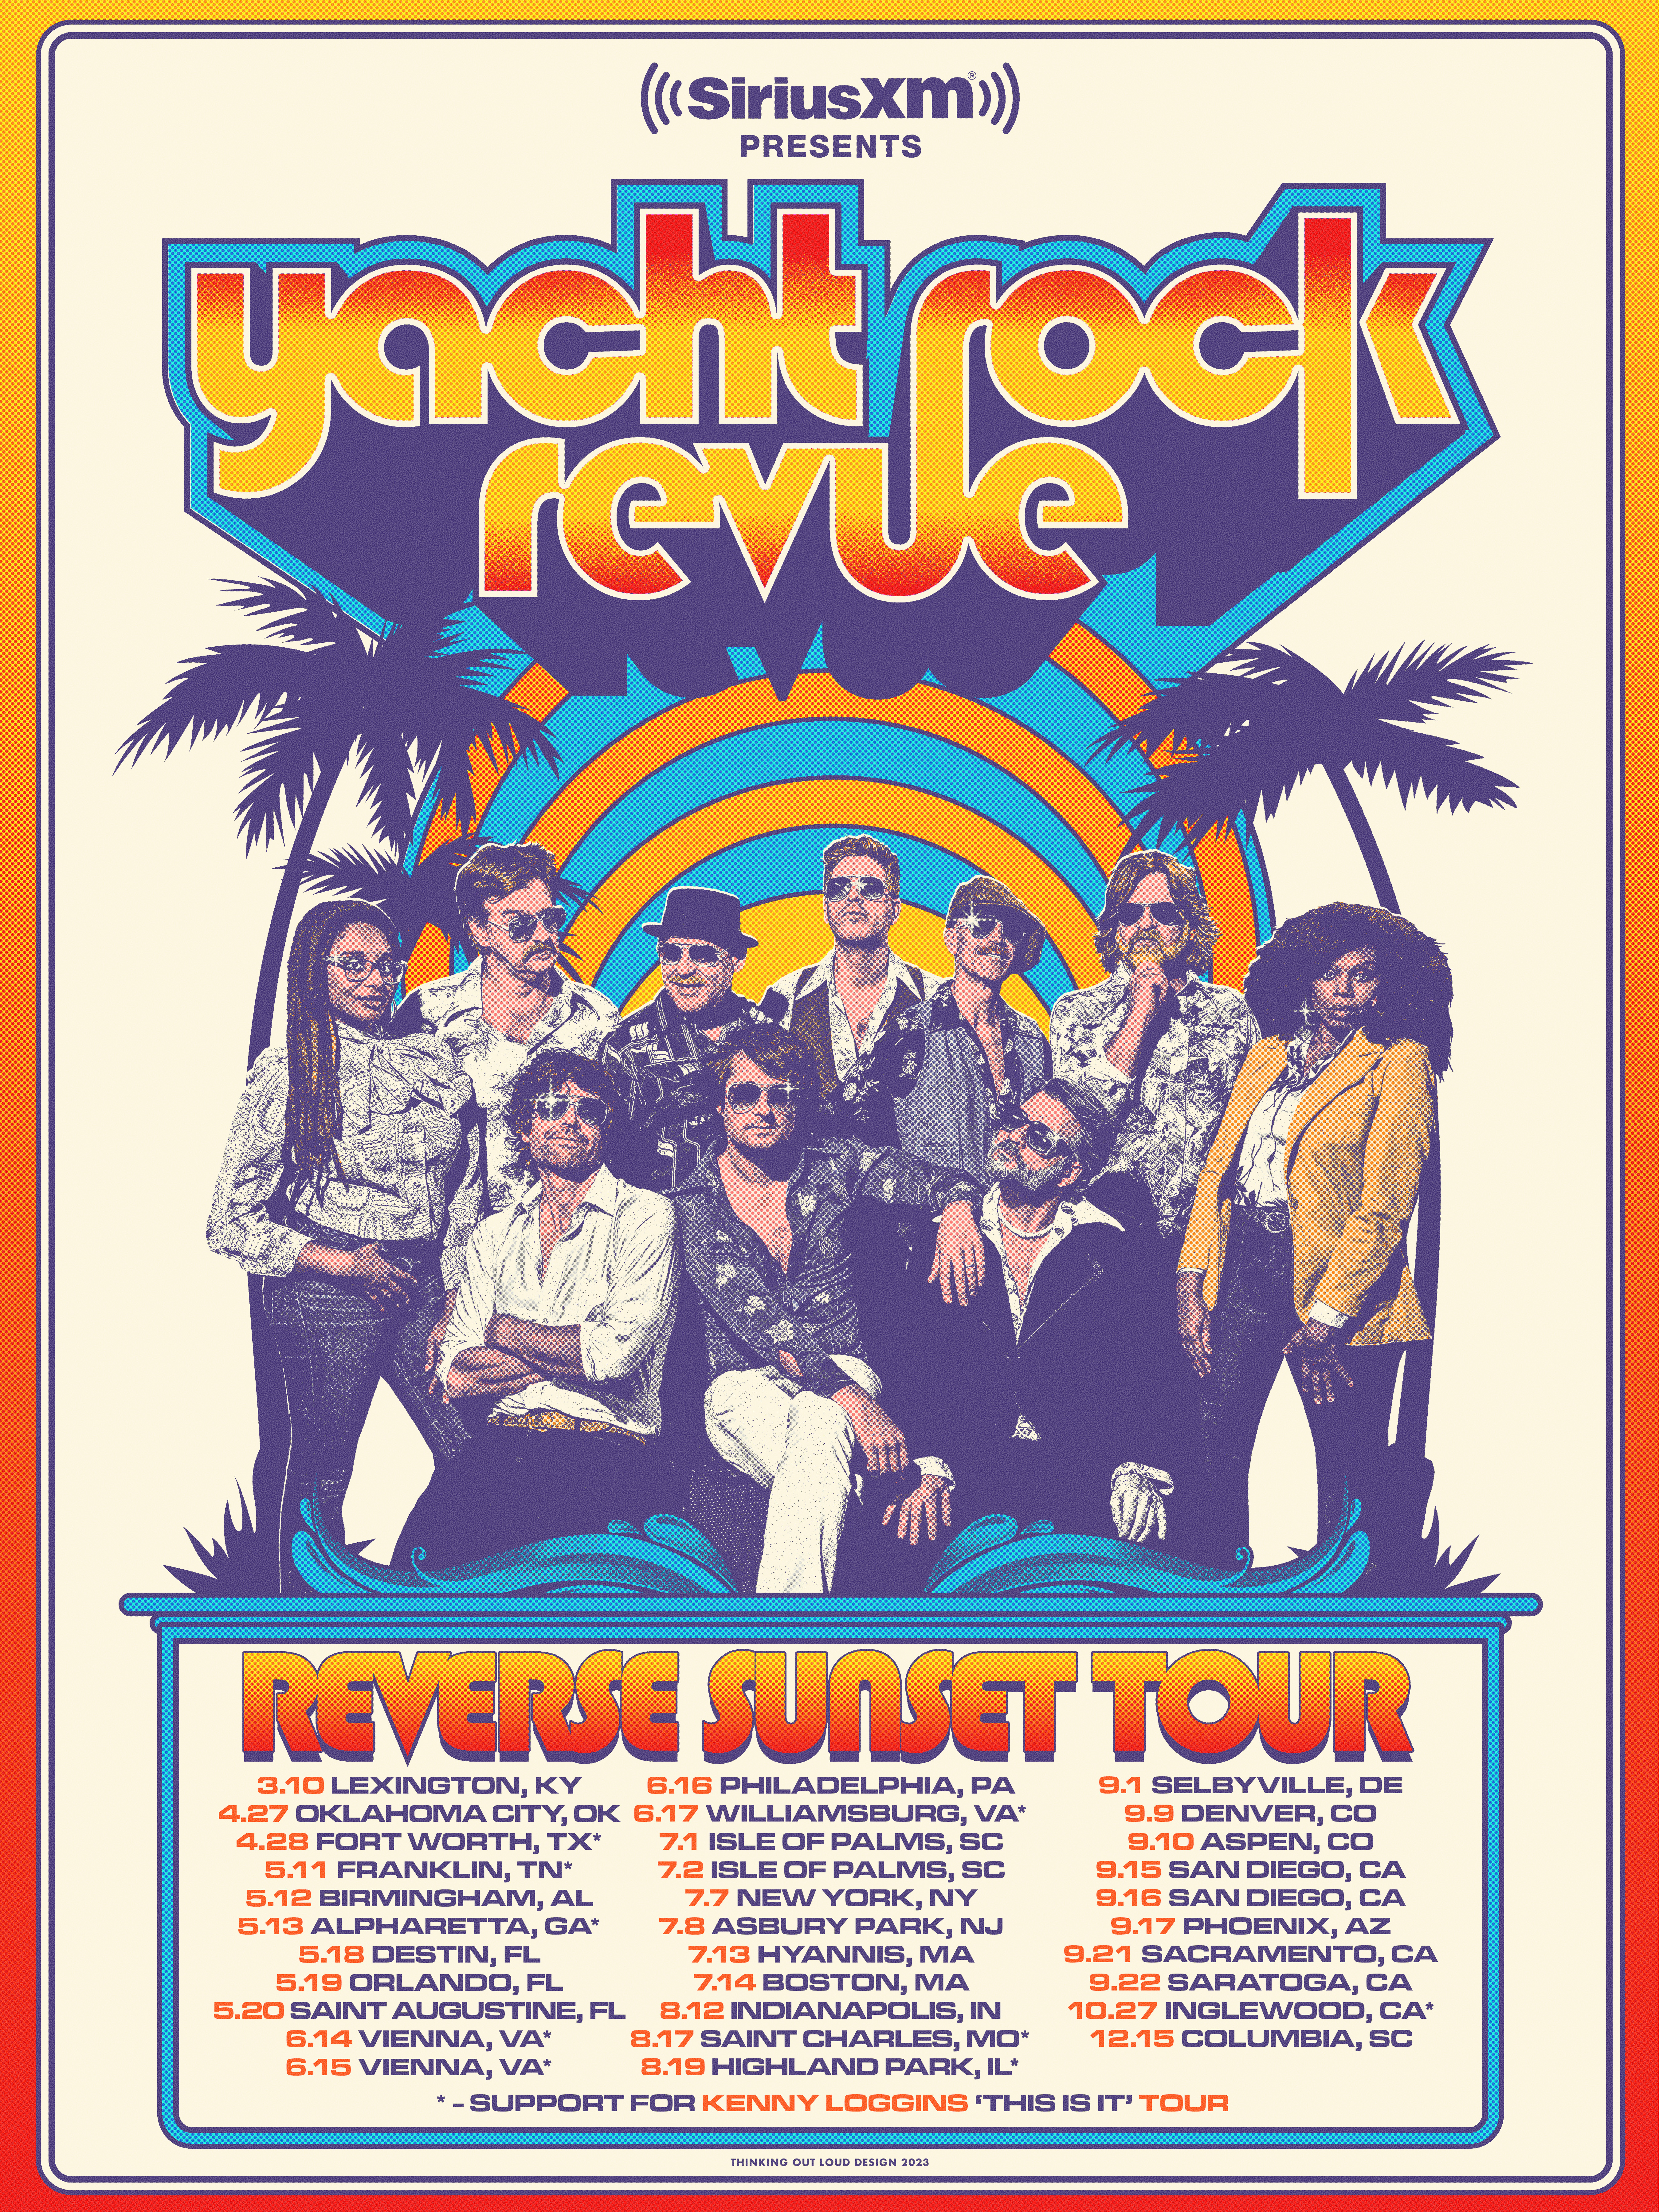 Yacht Rock Revue poster 02.16.23 COLOR FINAL DATES WEB